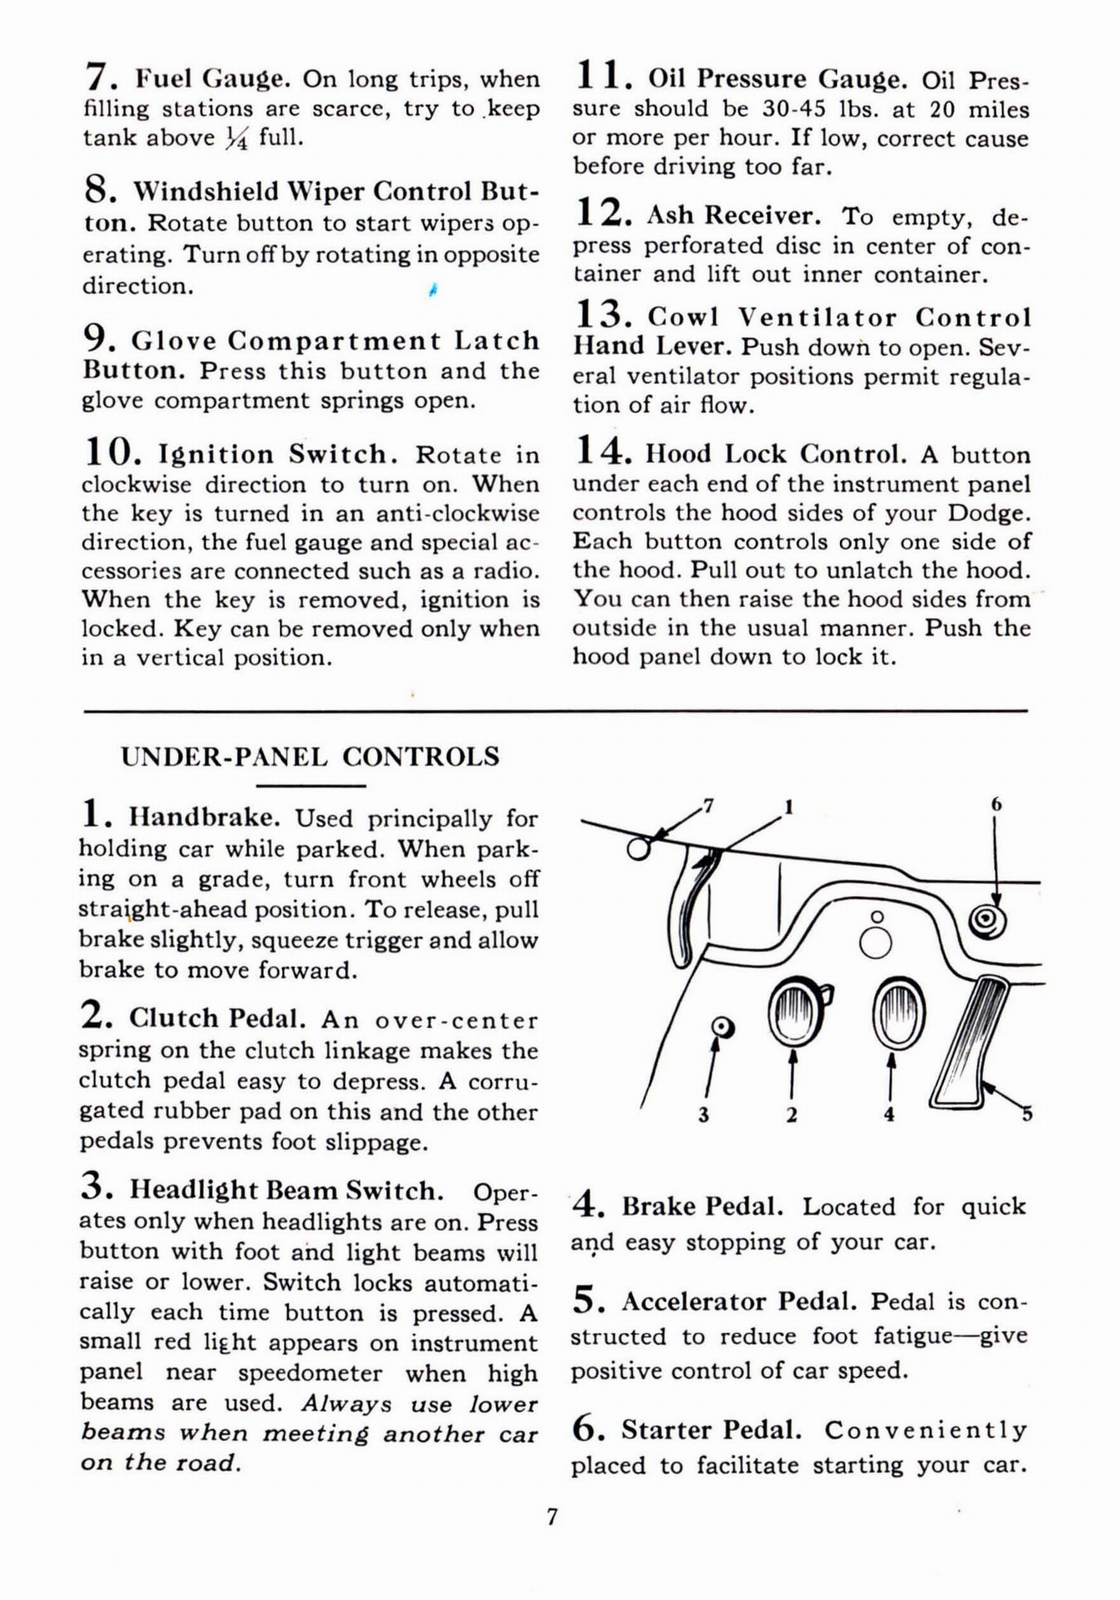 n_1941 Dodge Owners Manual-07.jpg